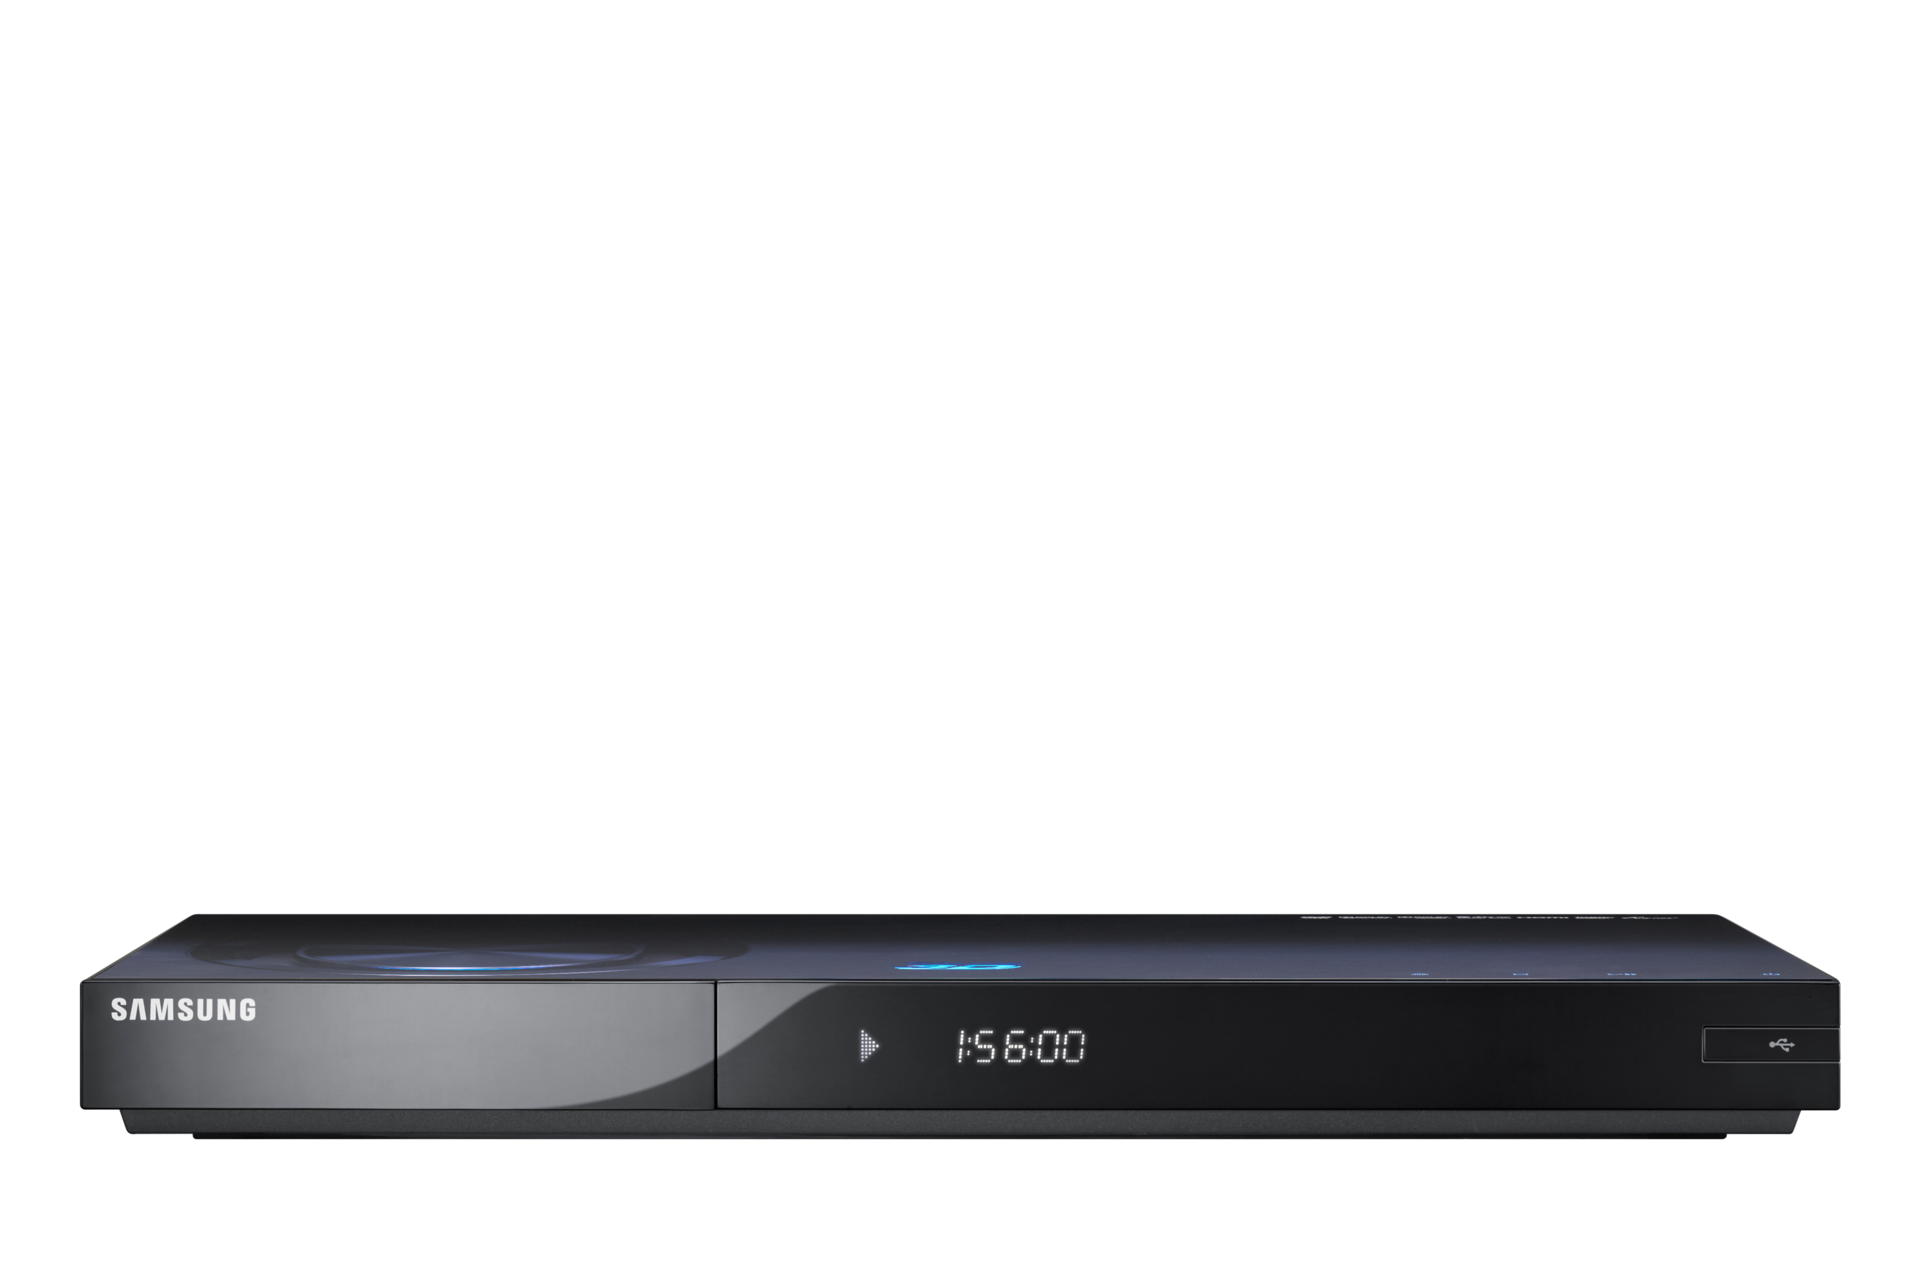 ginder nemen bescherming BD-C6900 3D Blu-ray speler | Samsung Service NL